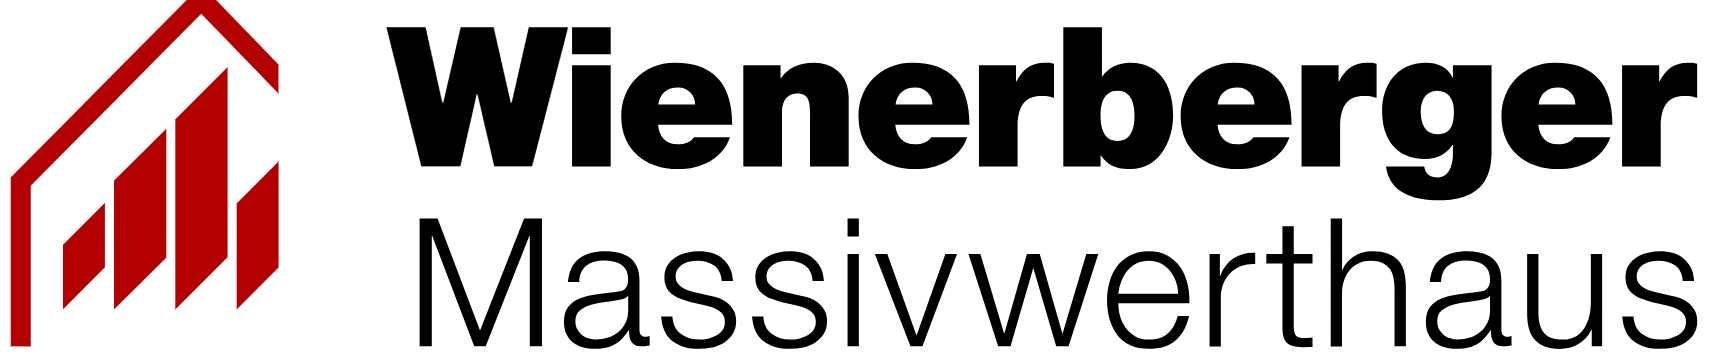 Wienerberger Massivwerthaus Logo - Presse - TAURUS Sicherheitstechnik